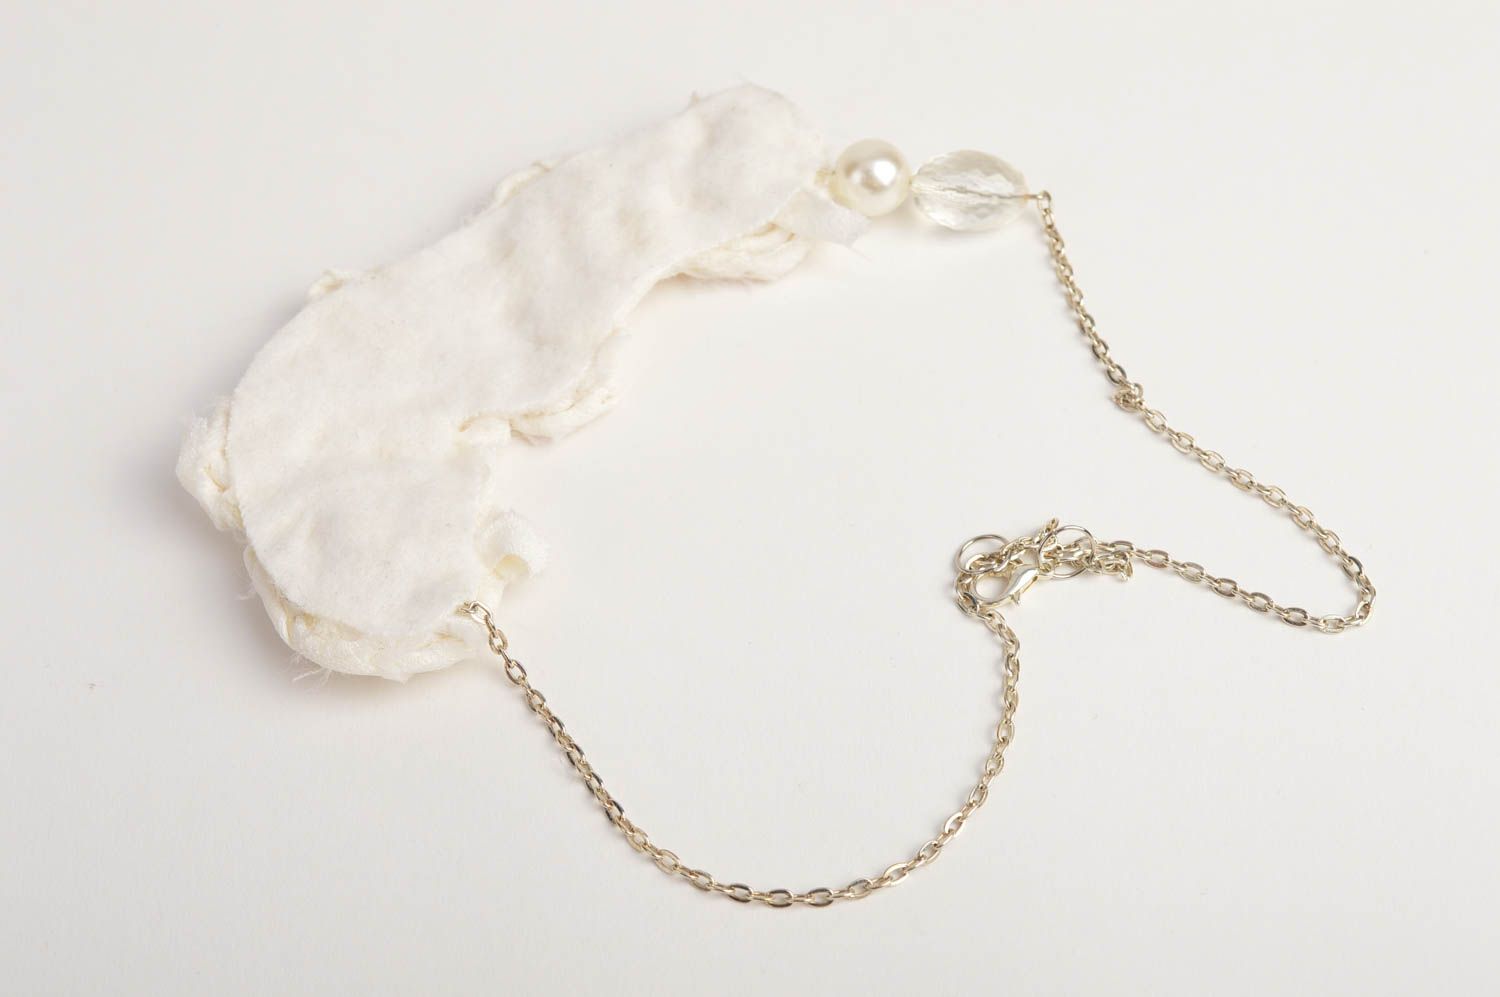 Handmade beaded necklace stylish elegant necklace fabric festive jewelry photo 5